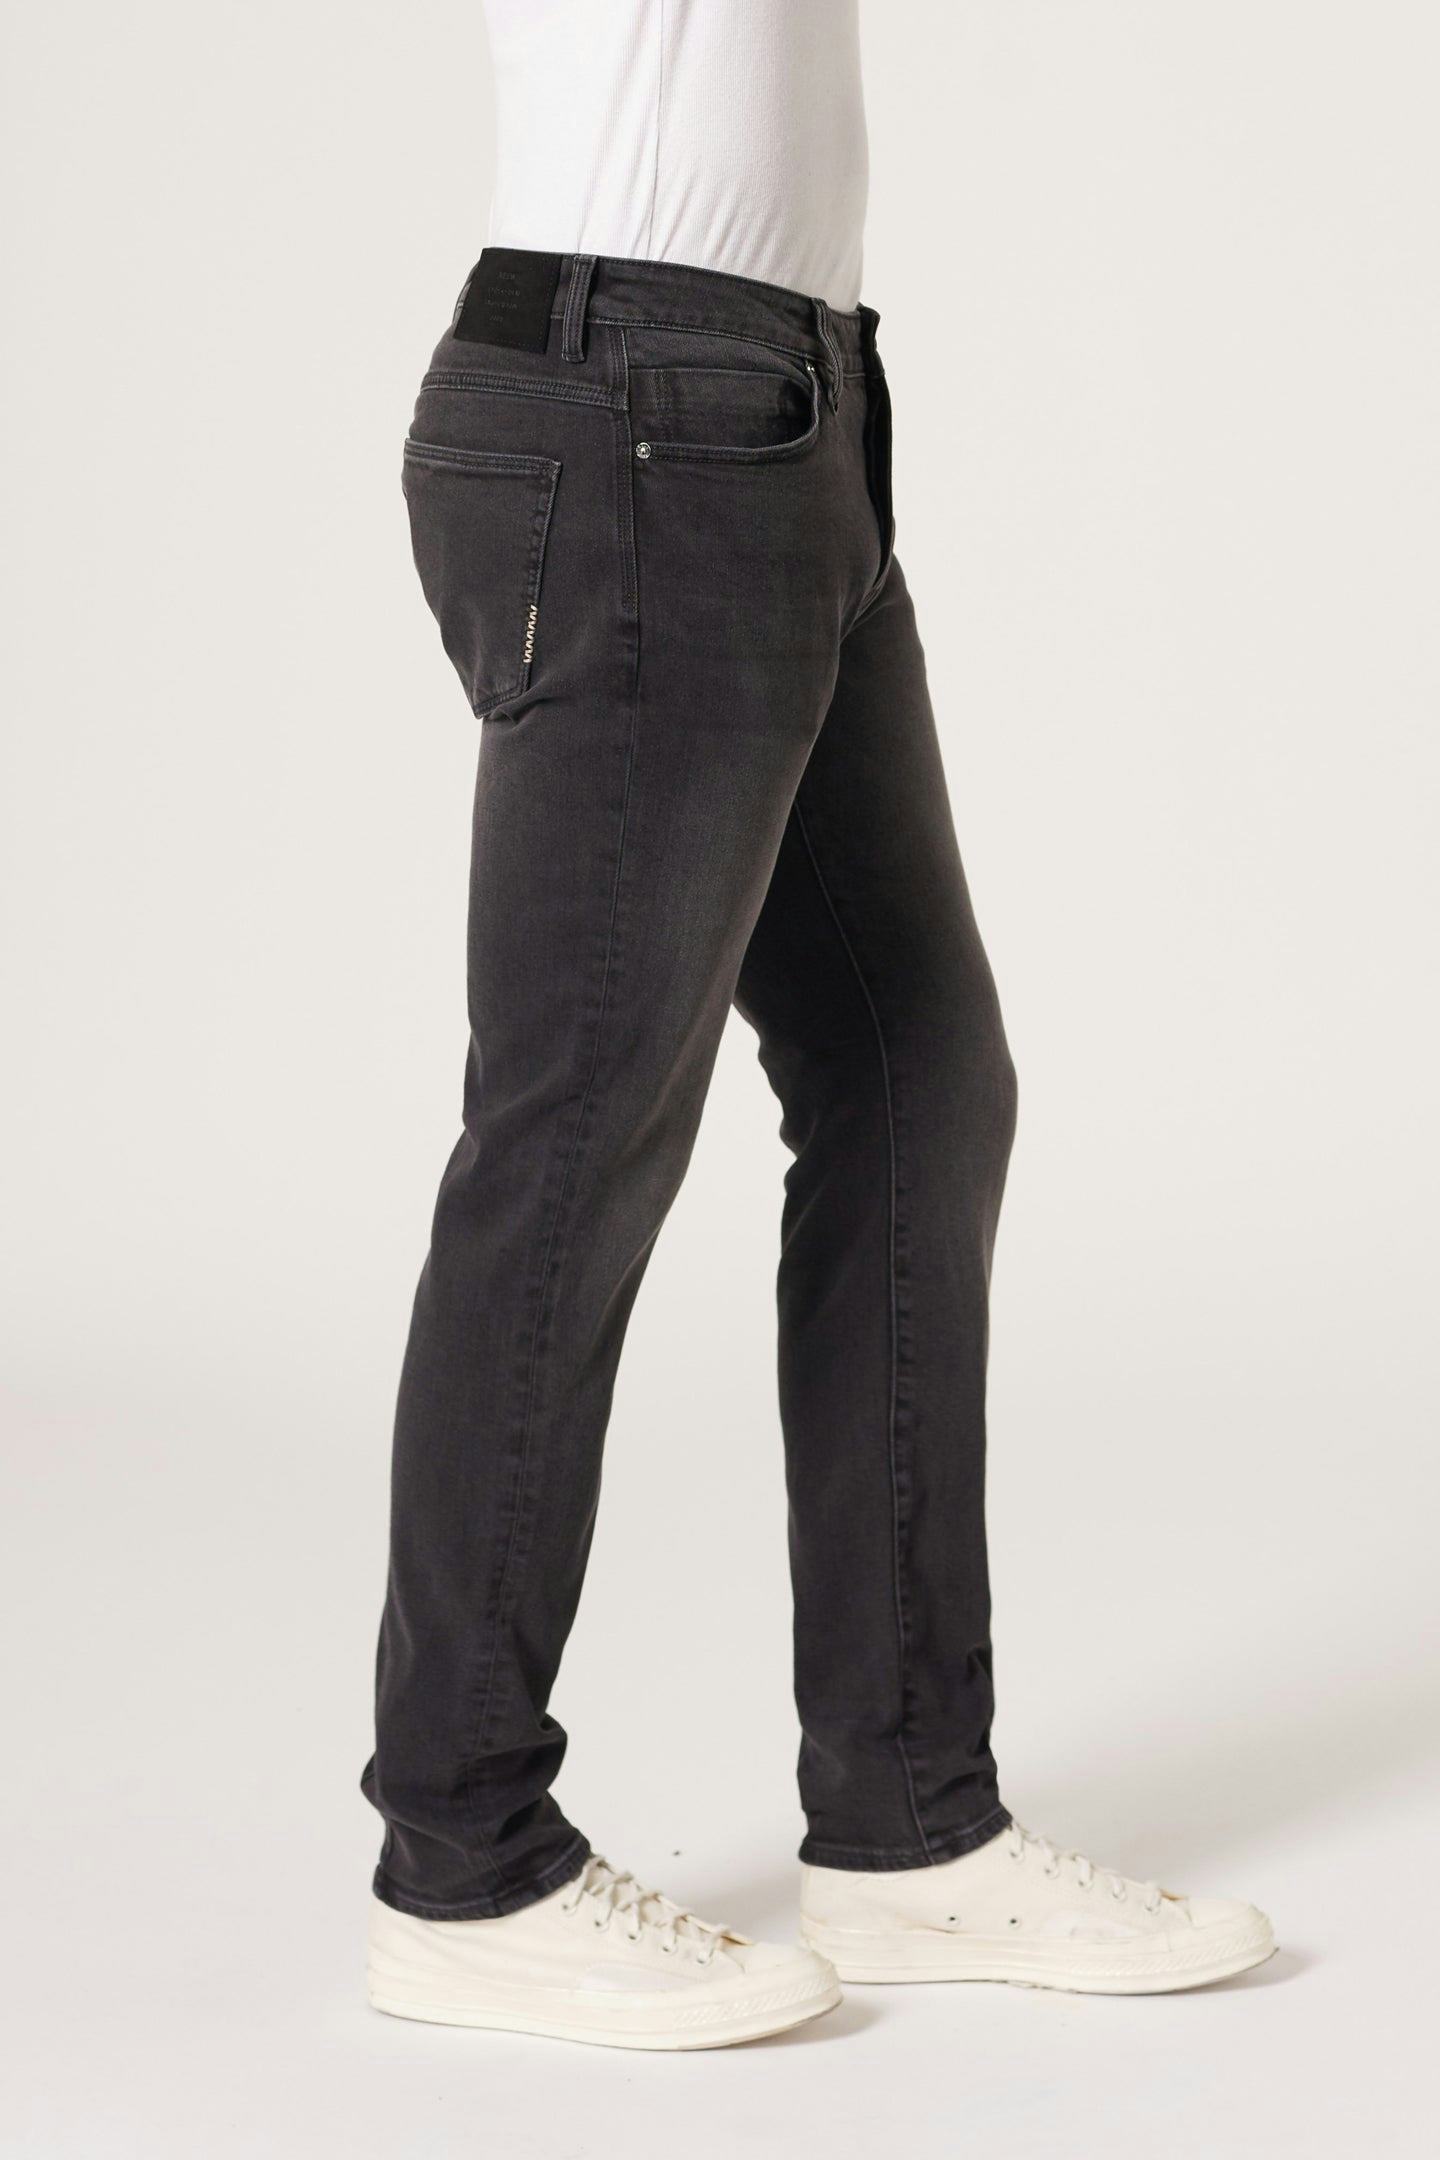 Lou Slim - Moonshake Neuw dark black mens-jeans 